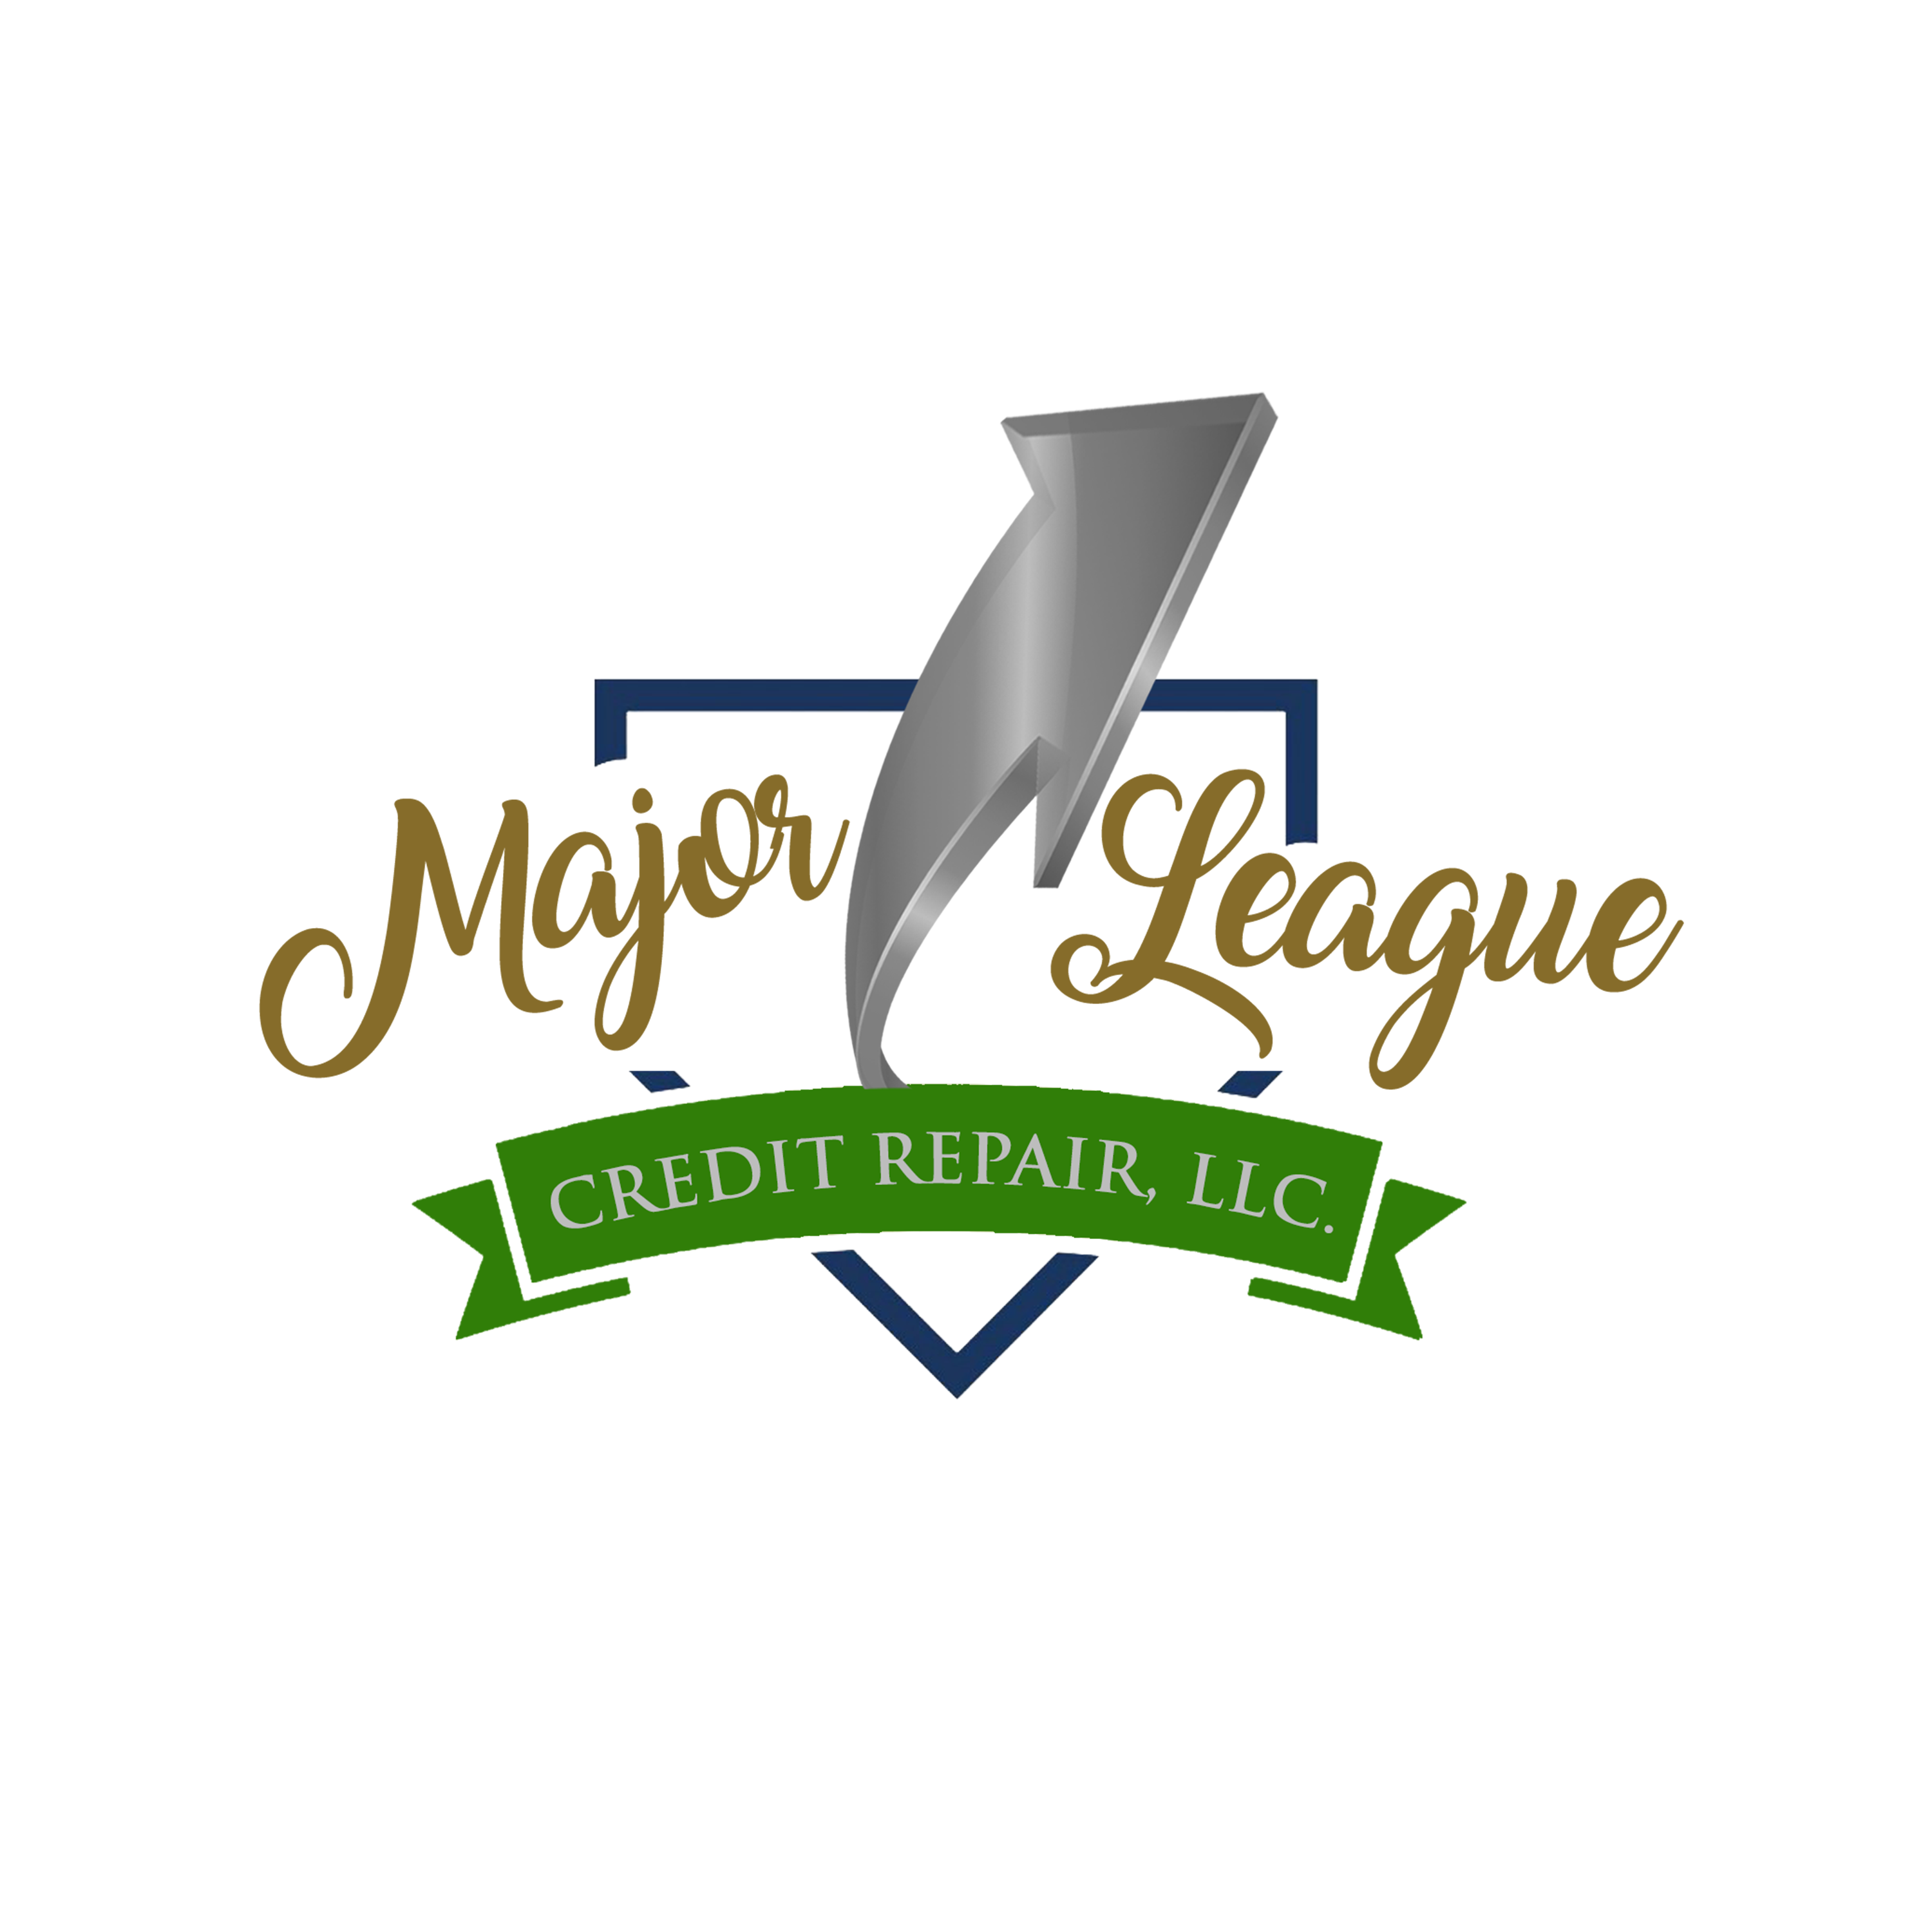 Major League Credit Repair, LLC Logo